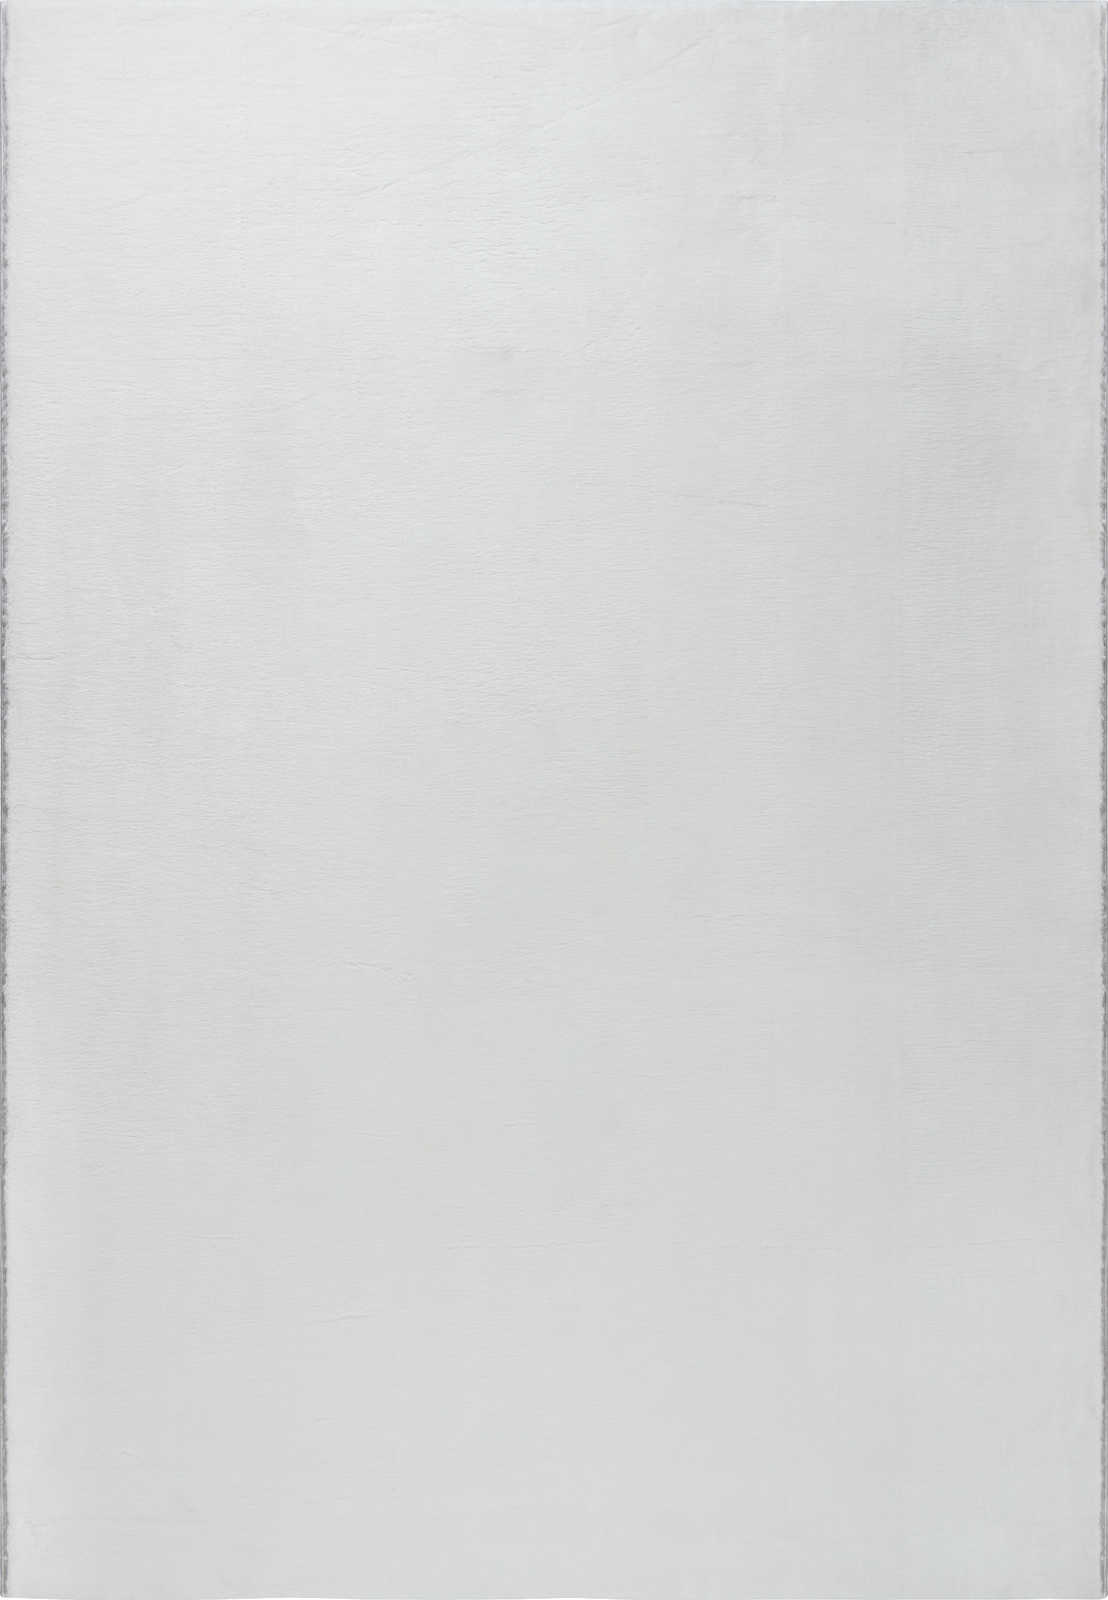             Flauschiger Hochflor Teppich in angenehmen Creme – 230 x 160 cm
        